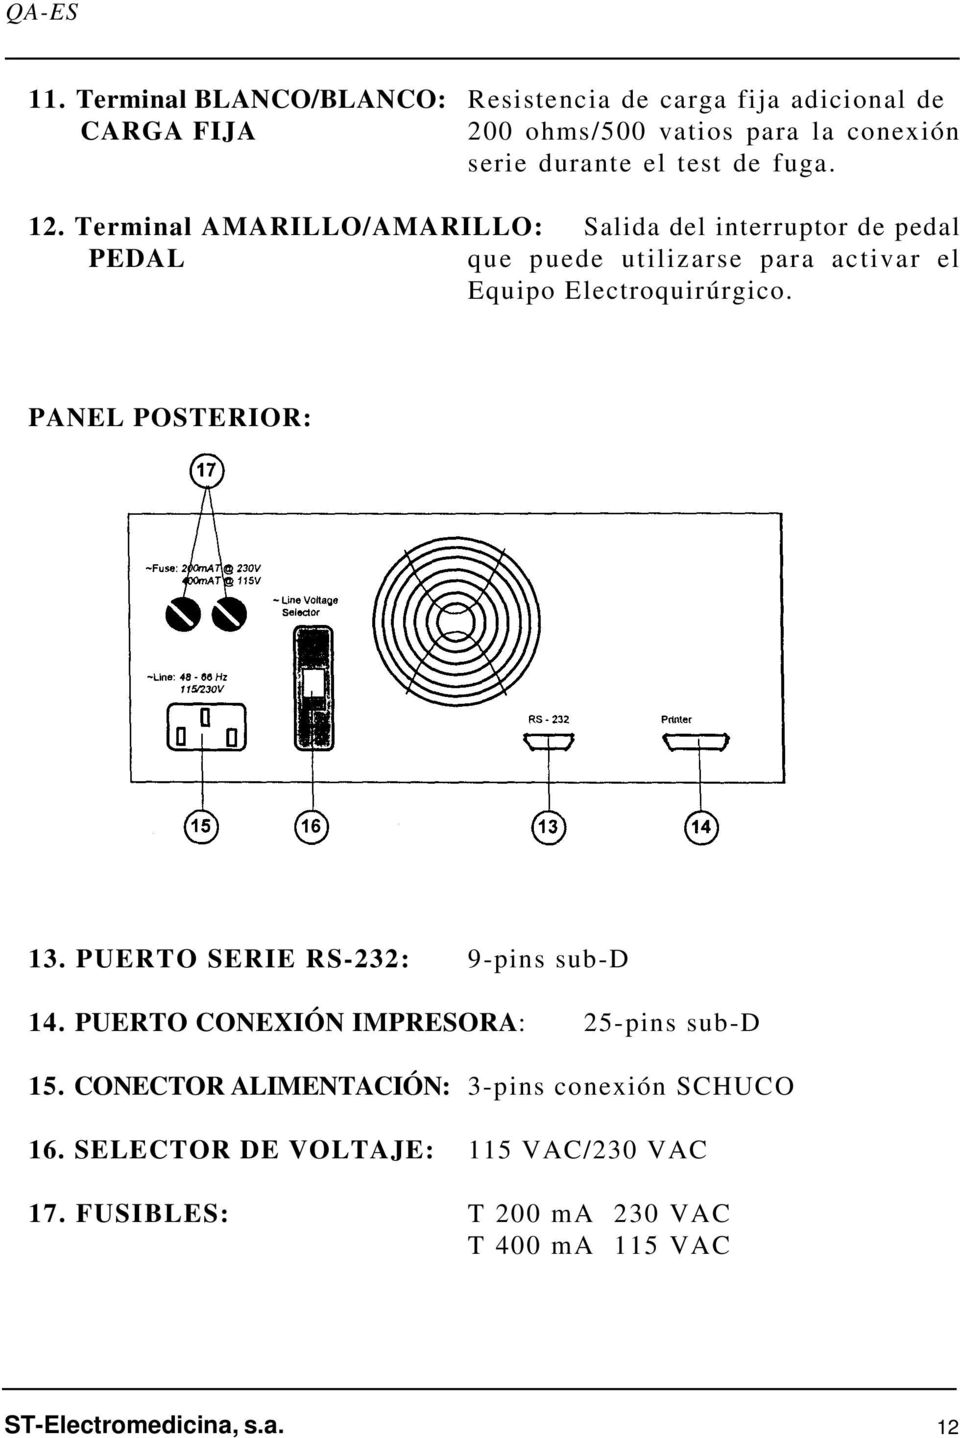 Terminal AMARILLO/AMARILLO: Salida del interruptor de pedal PEDAL que puede utilizarse para activar el Equipo Electroquirúrgico.